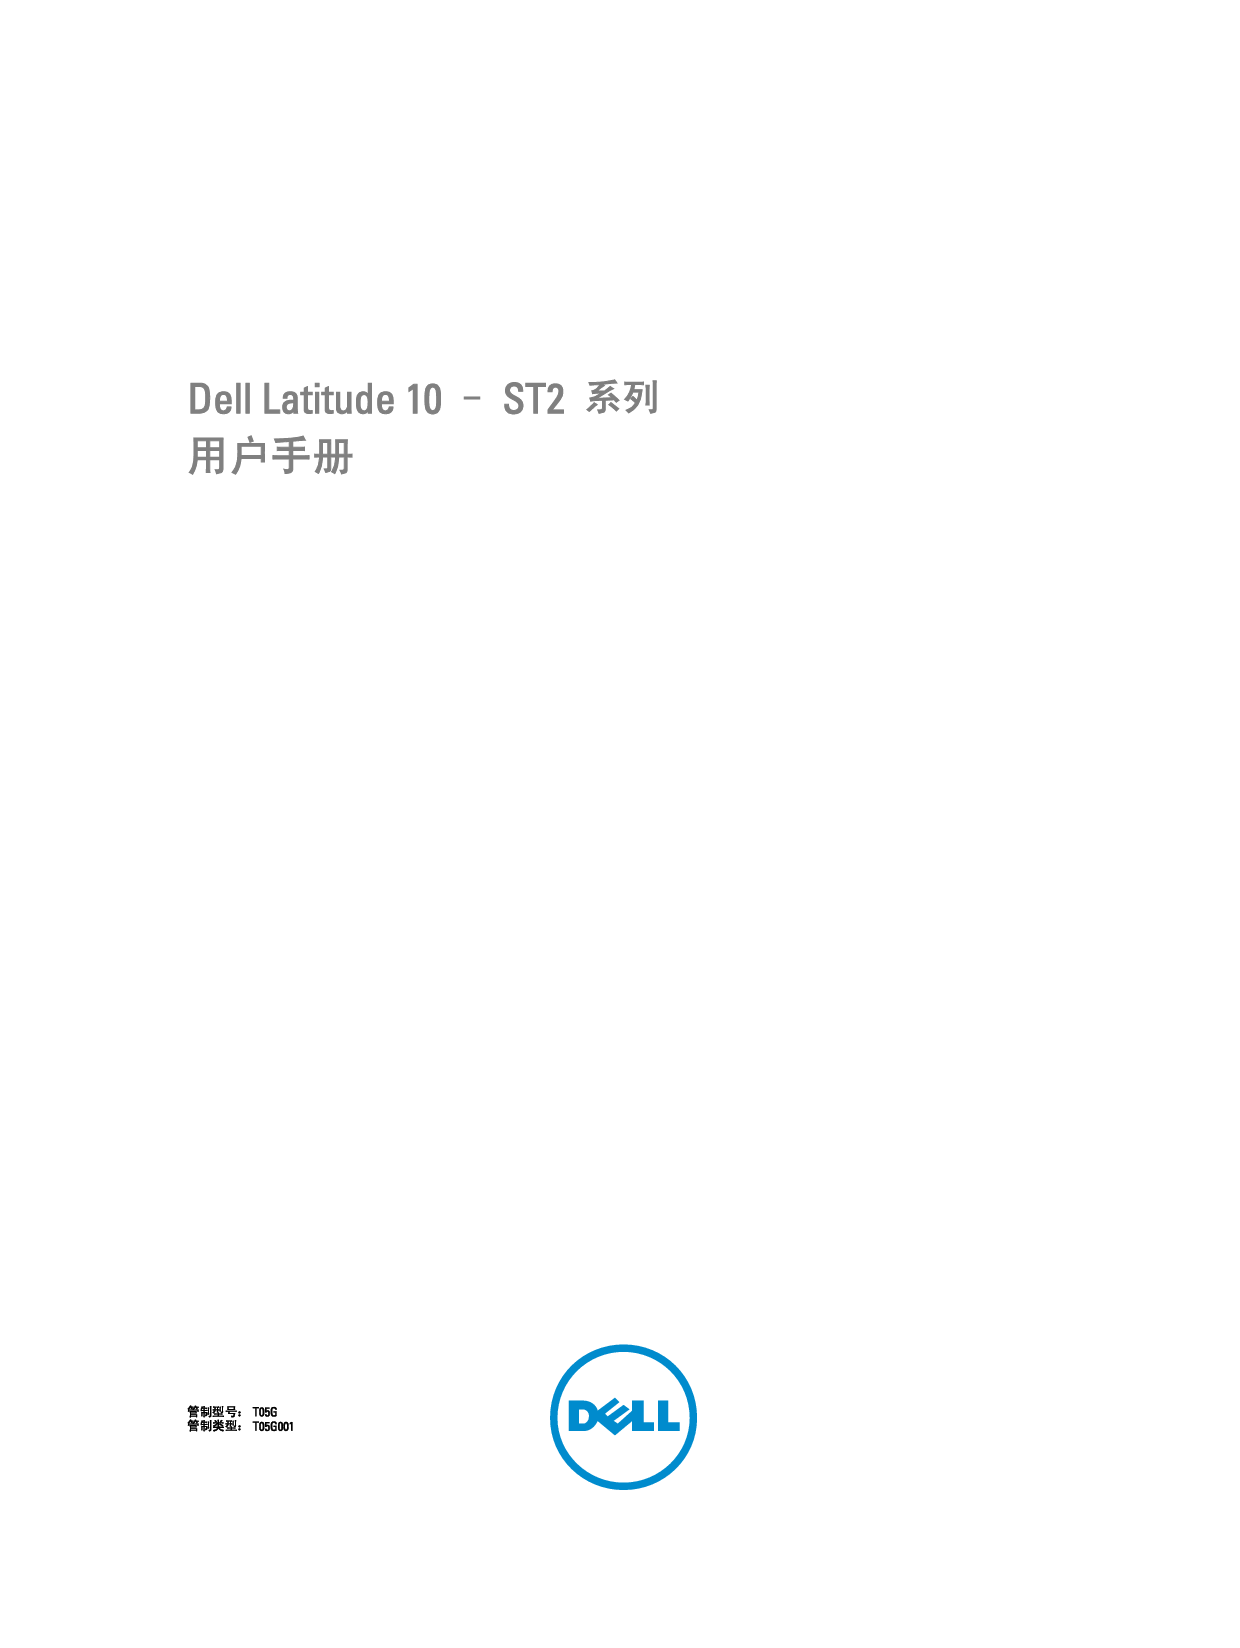 戴尔 Dell Latitude 10 TABLET 用户手册 封面